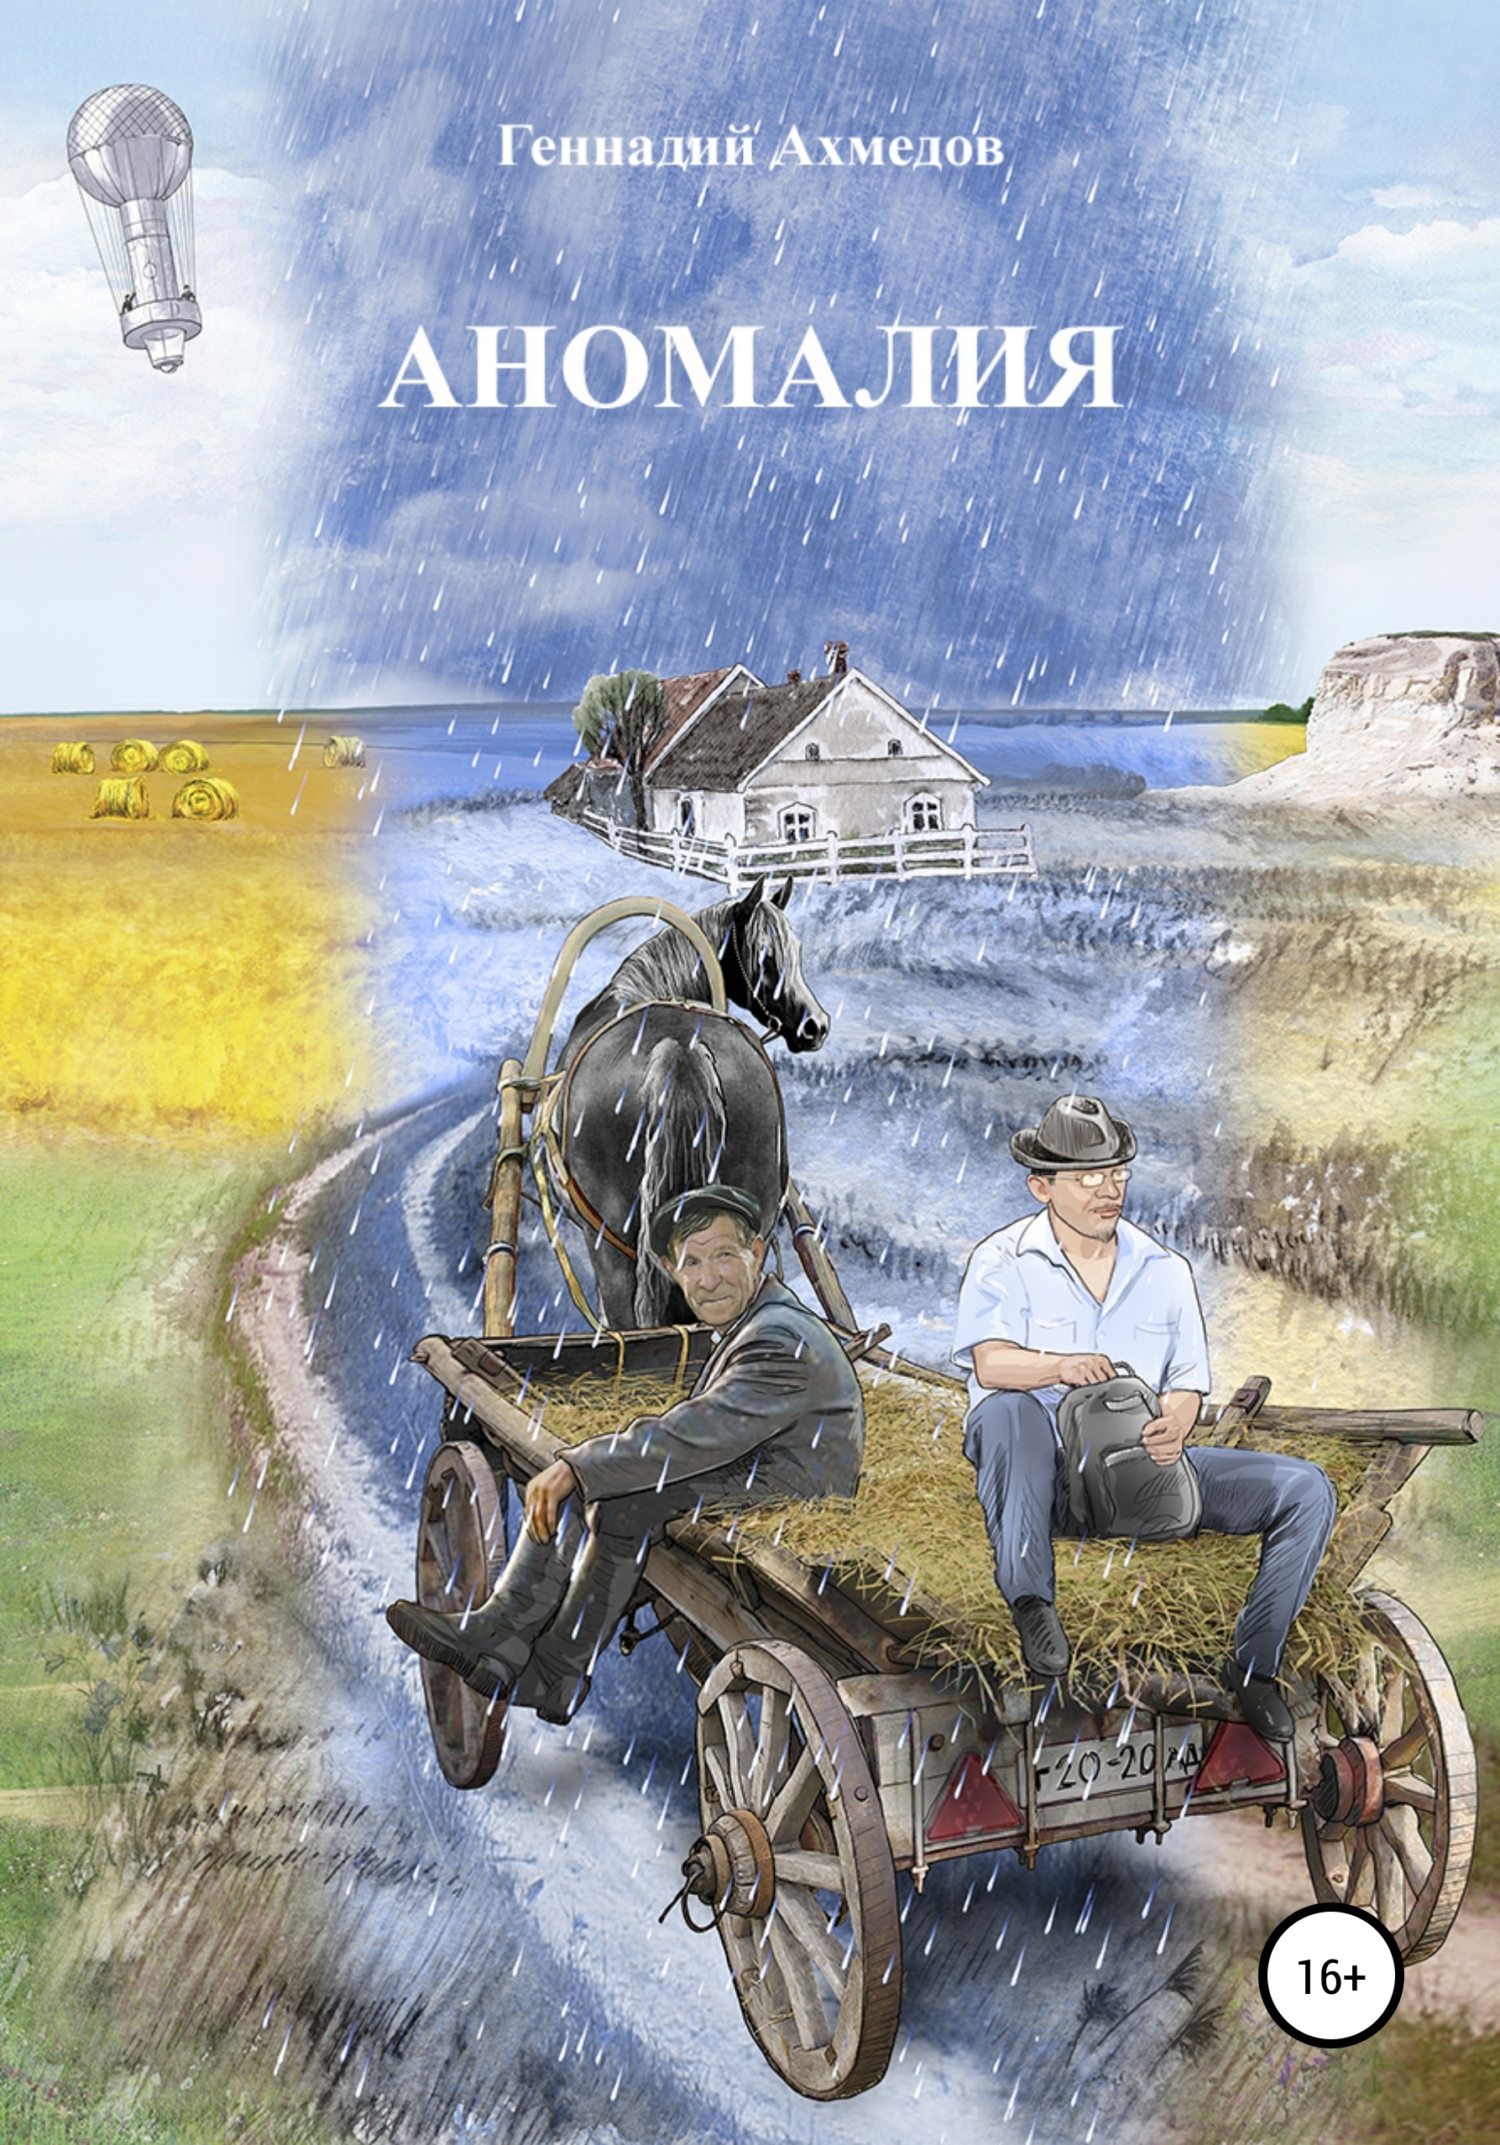 Аномалия – Геннадий Ахмедов